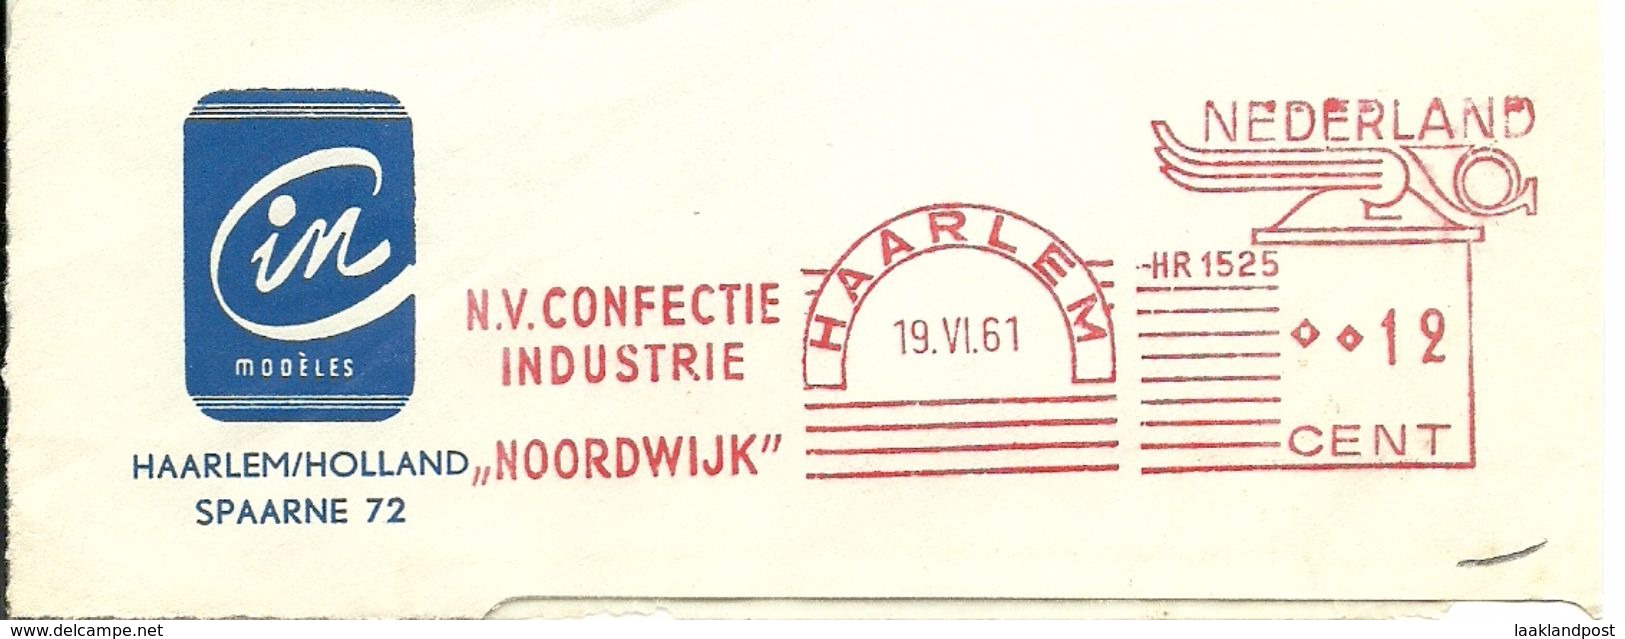 NL Nice Cut Meter NV Confectie Industrie Noordwijk, Haarlem 19/6/1961 Textile - Textiel